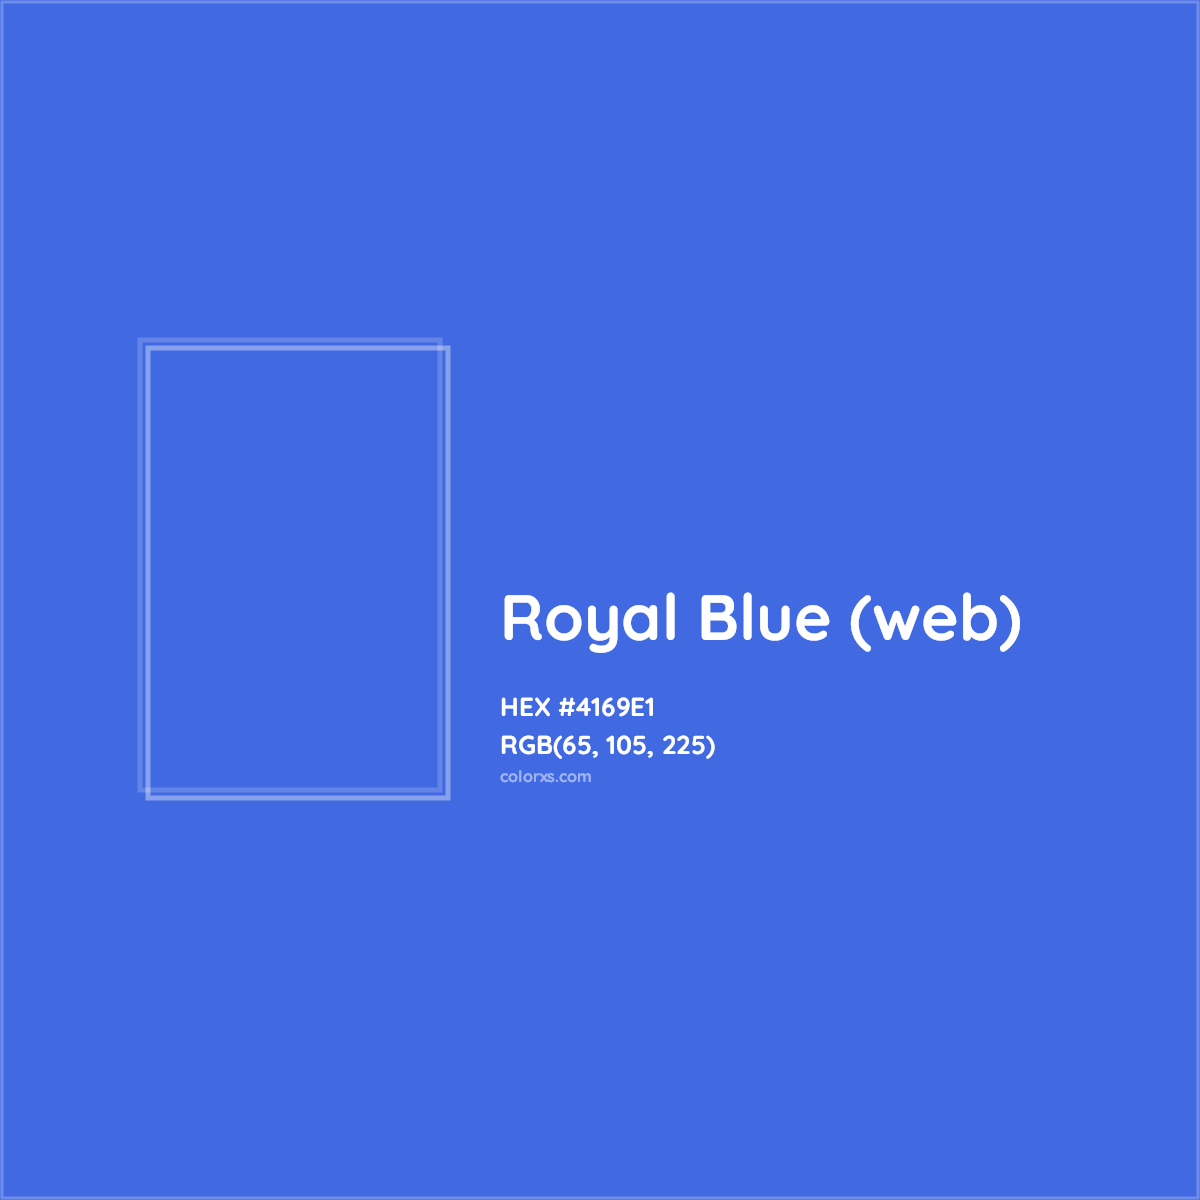 HEX #4169E1 Royal Blue (web) Color - Color Code